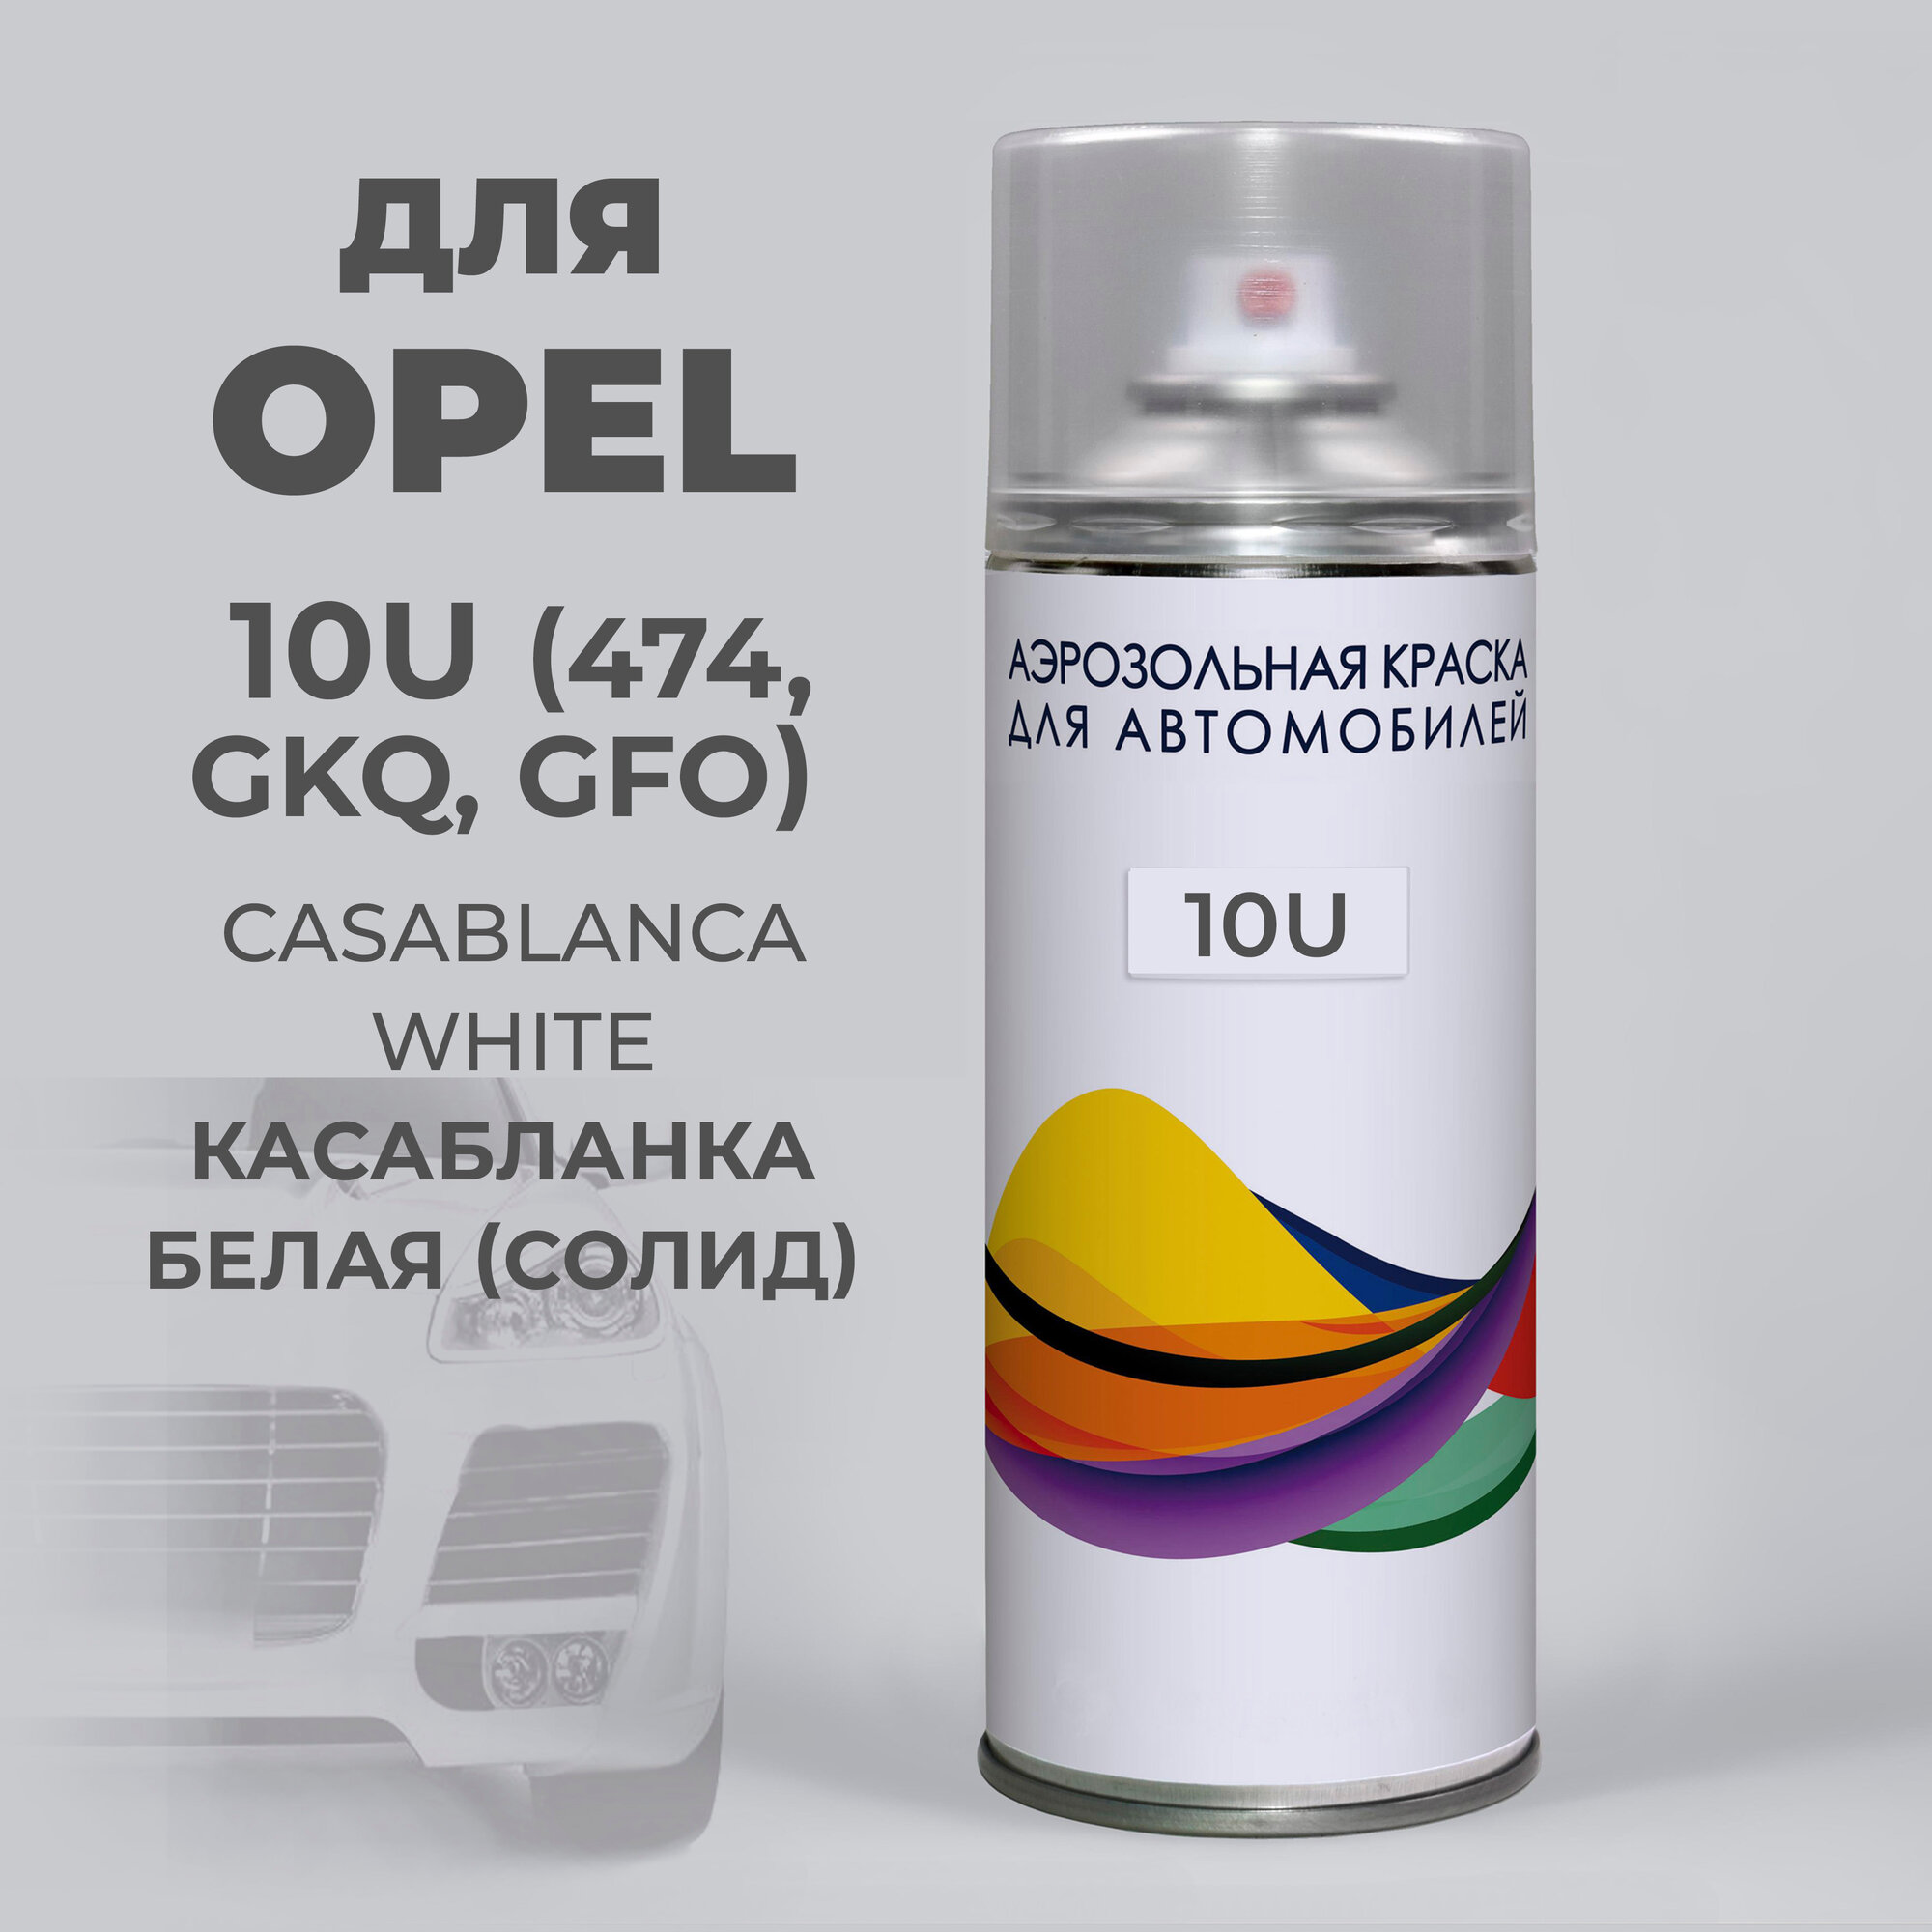 Краска Opel белый 10U (474, GKQ, GFO) Опель, CASABLANCA WHITE, аэрозоль 400 мл